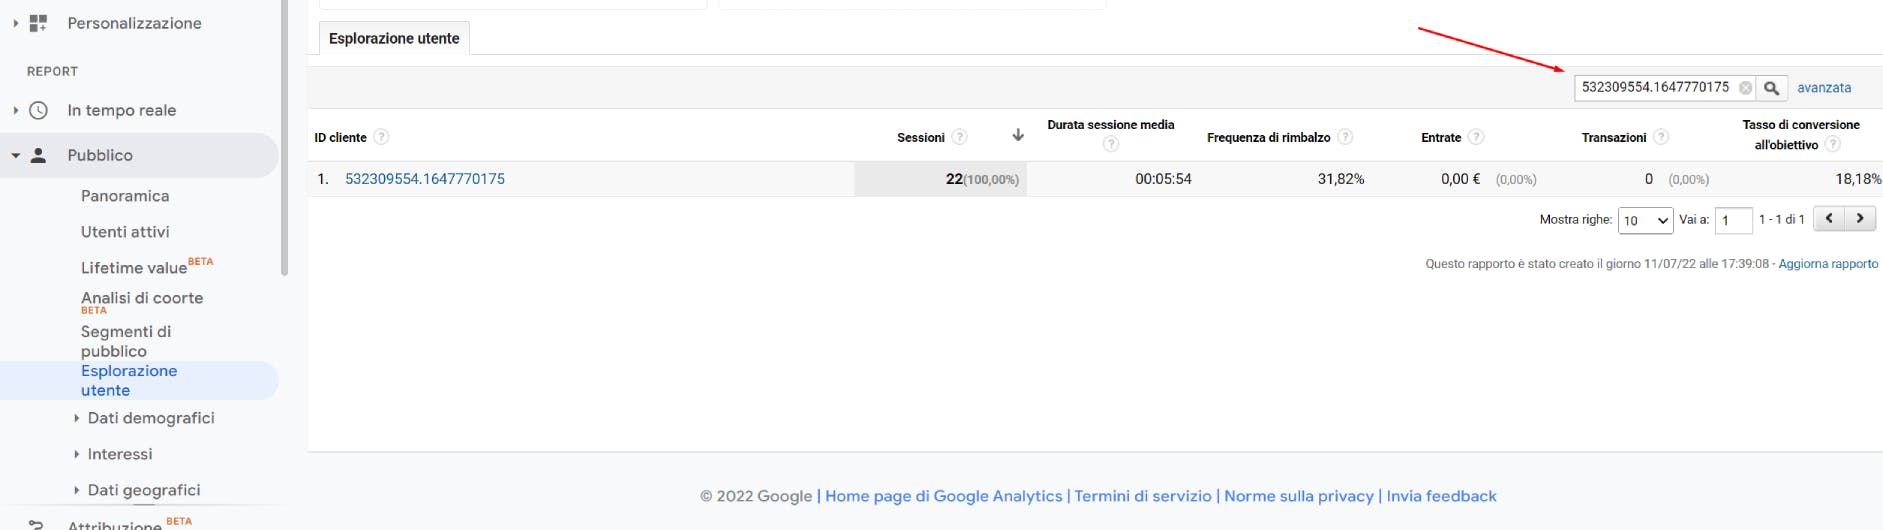 Uno screenshot di Analytics in cui si mostra come cercare utenti dalla sezione "Esplorazione utenti" usando il loro ID.